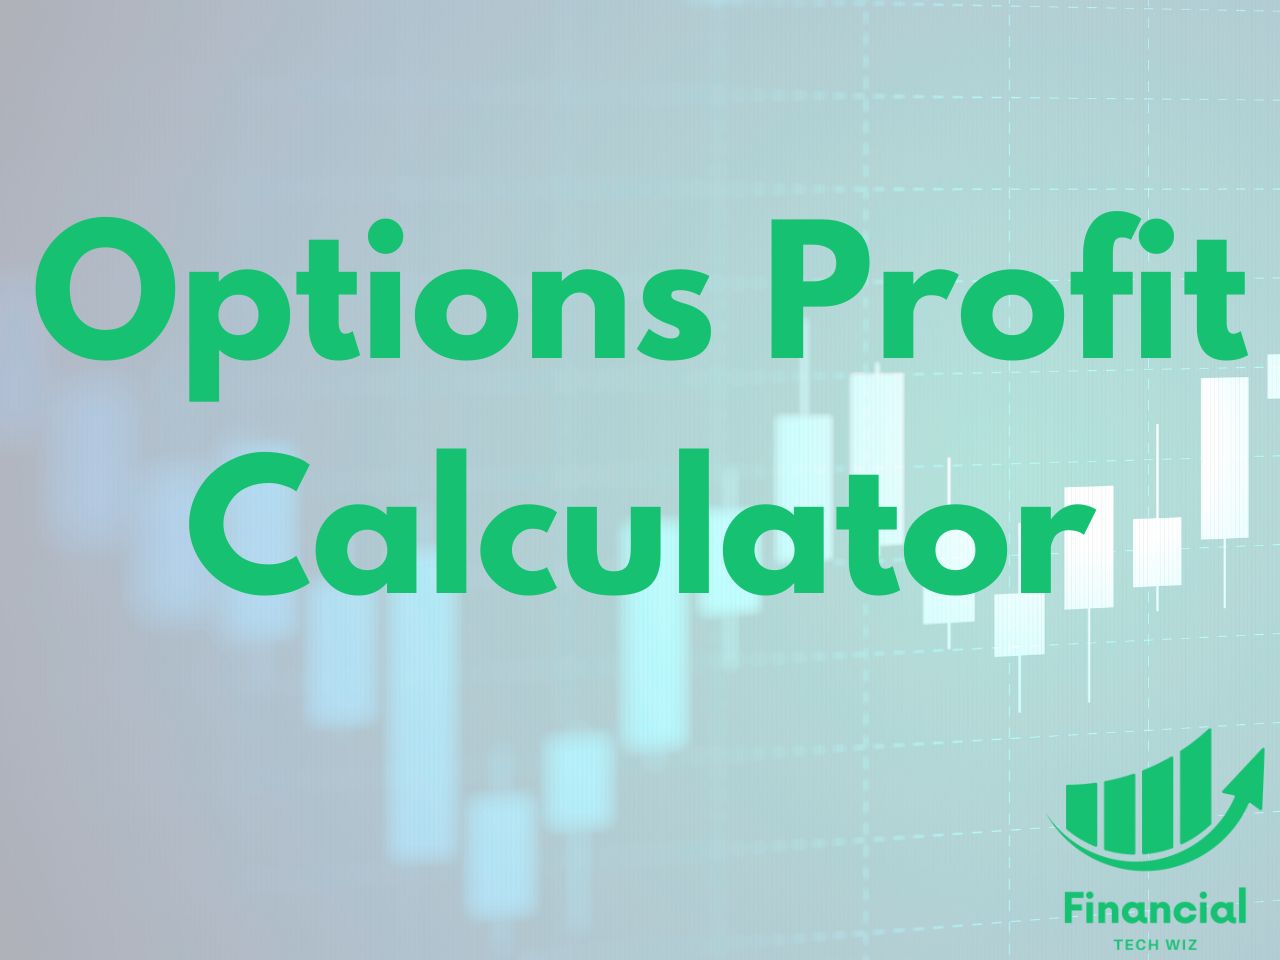 options profit calculator text